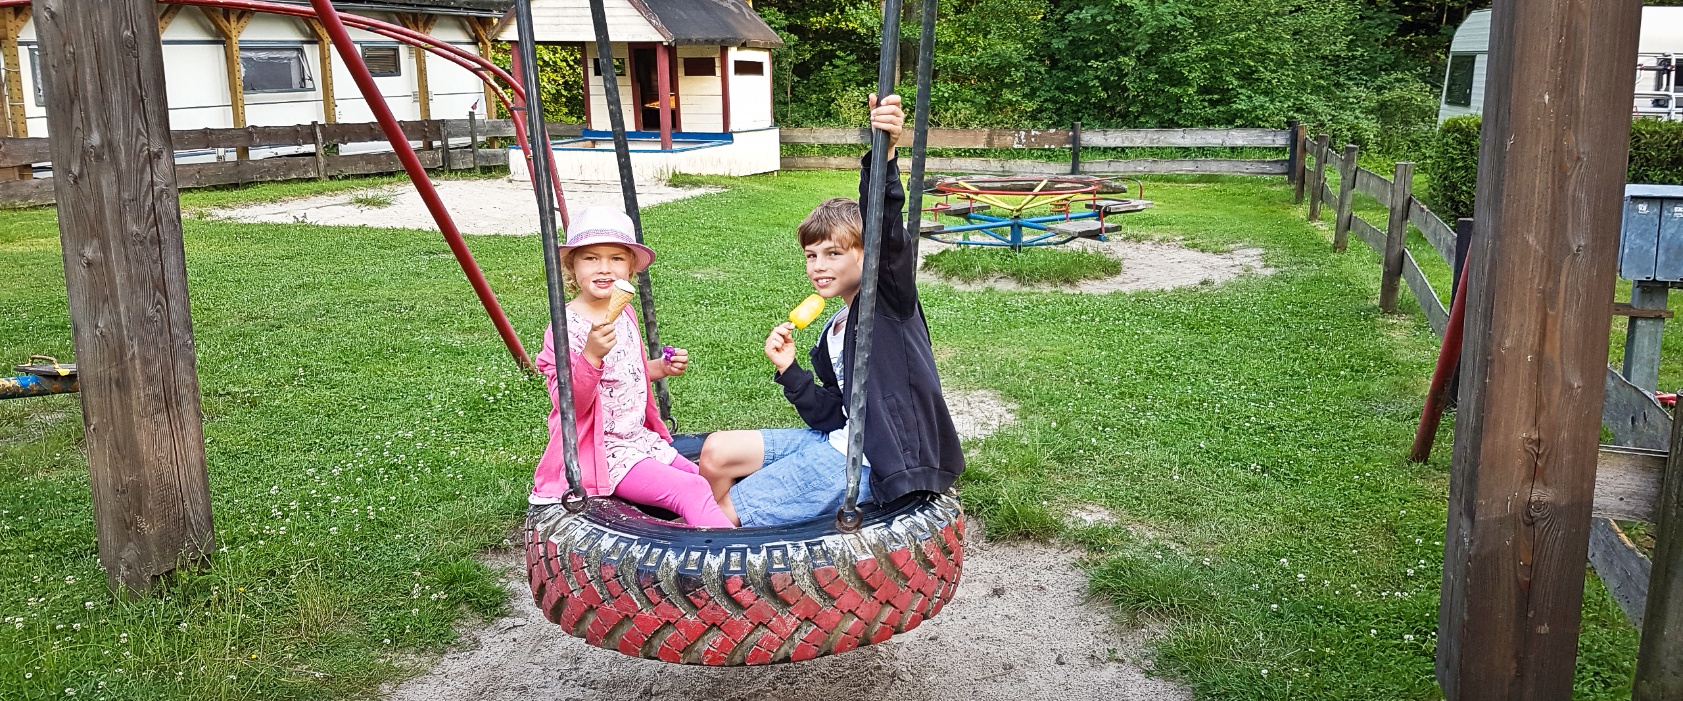 Schaukeln mit Eis - Ferien auf dem Campingplatz Eulenburg